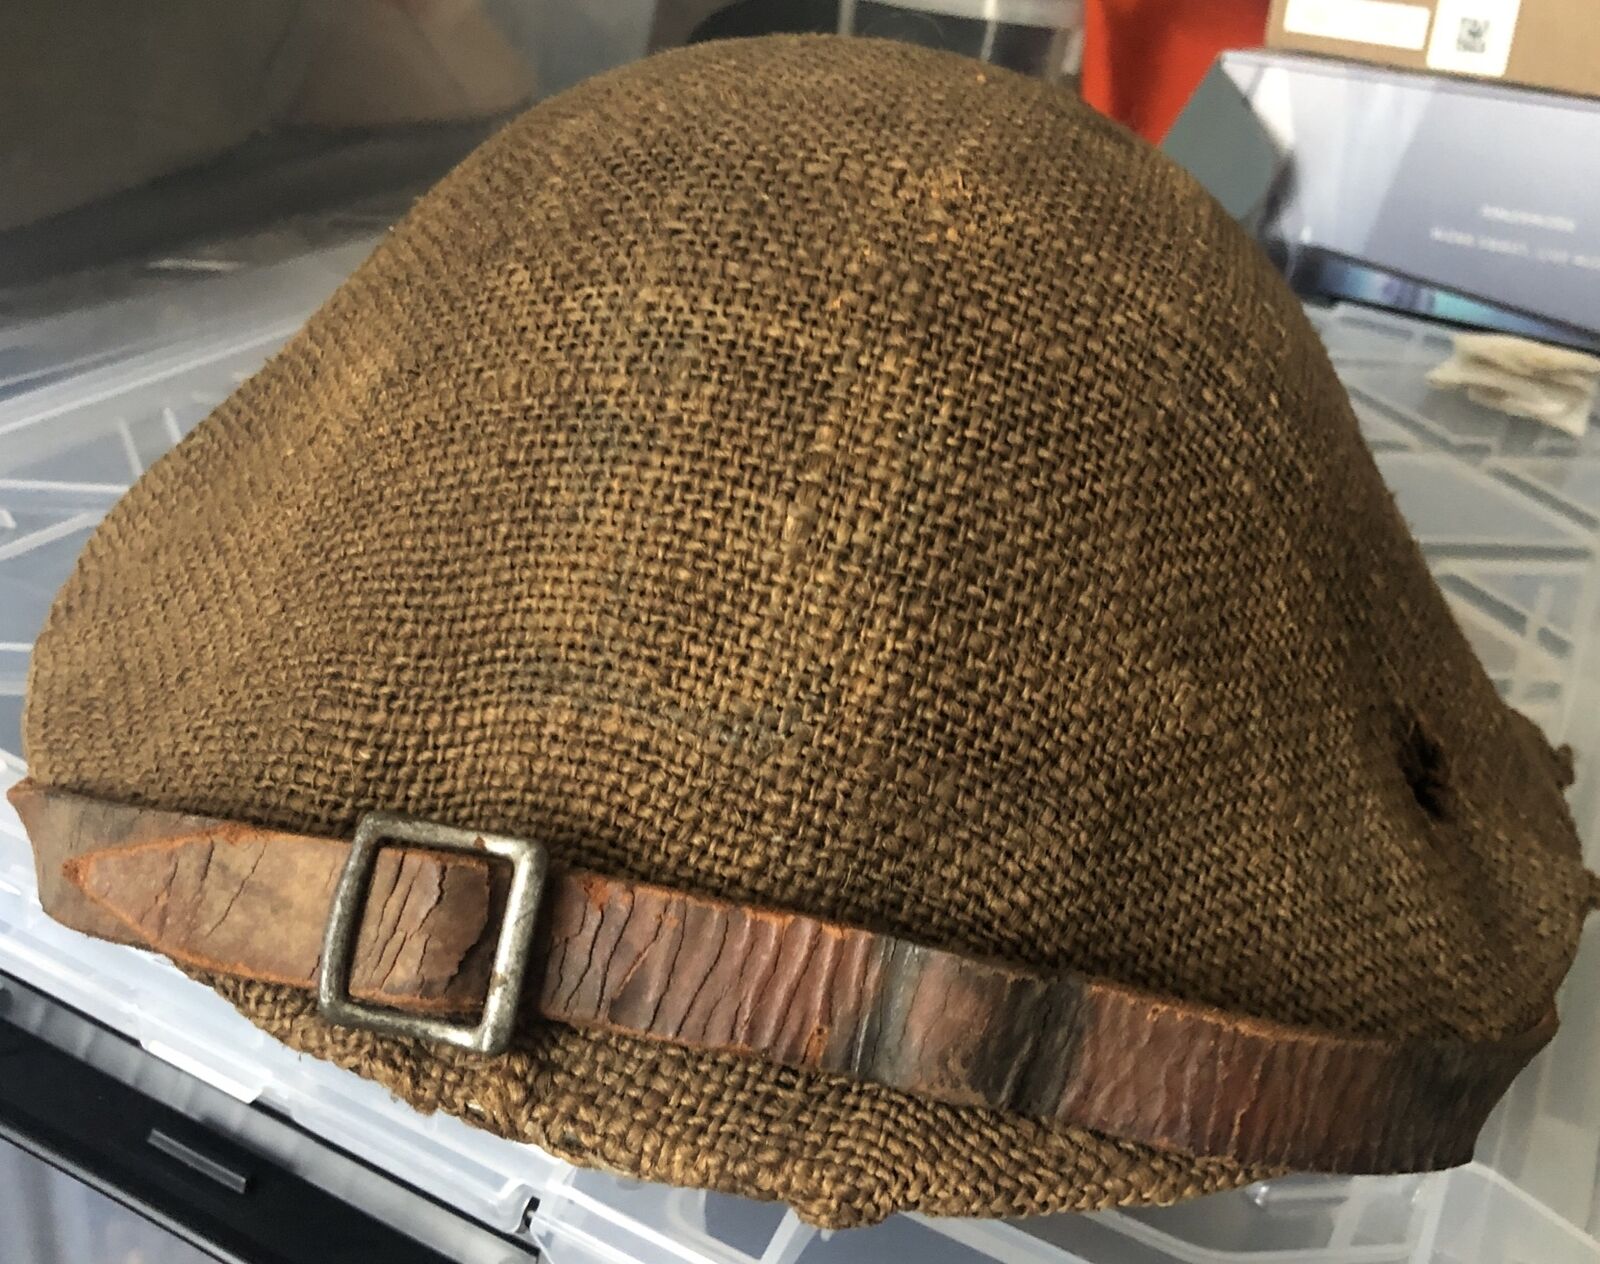 WWI British Helmet With Burlap Cover. Original